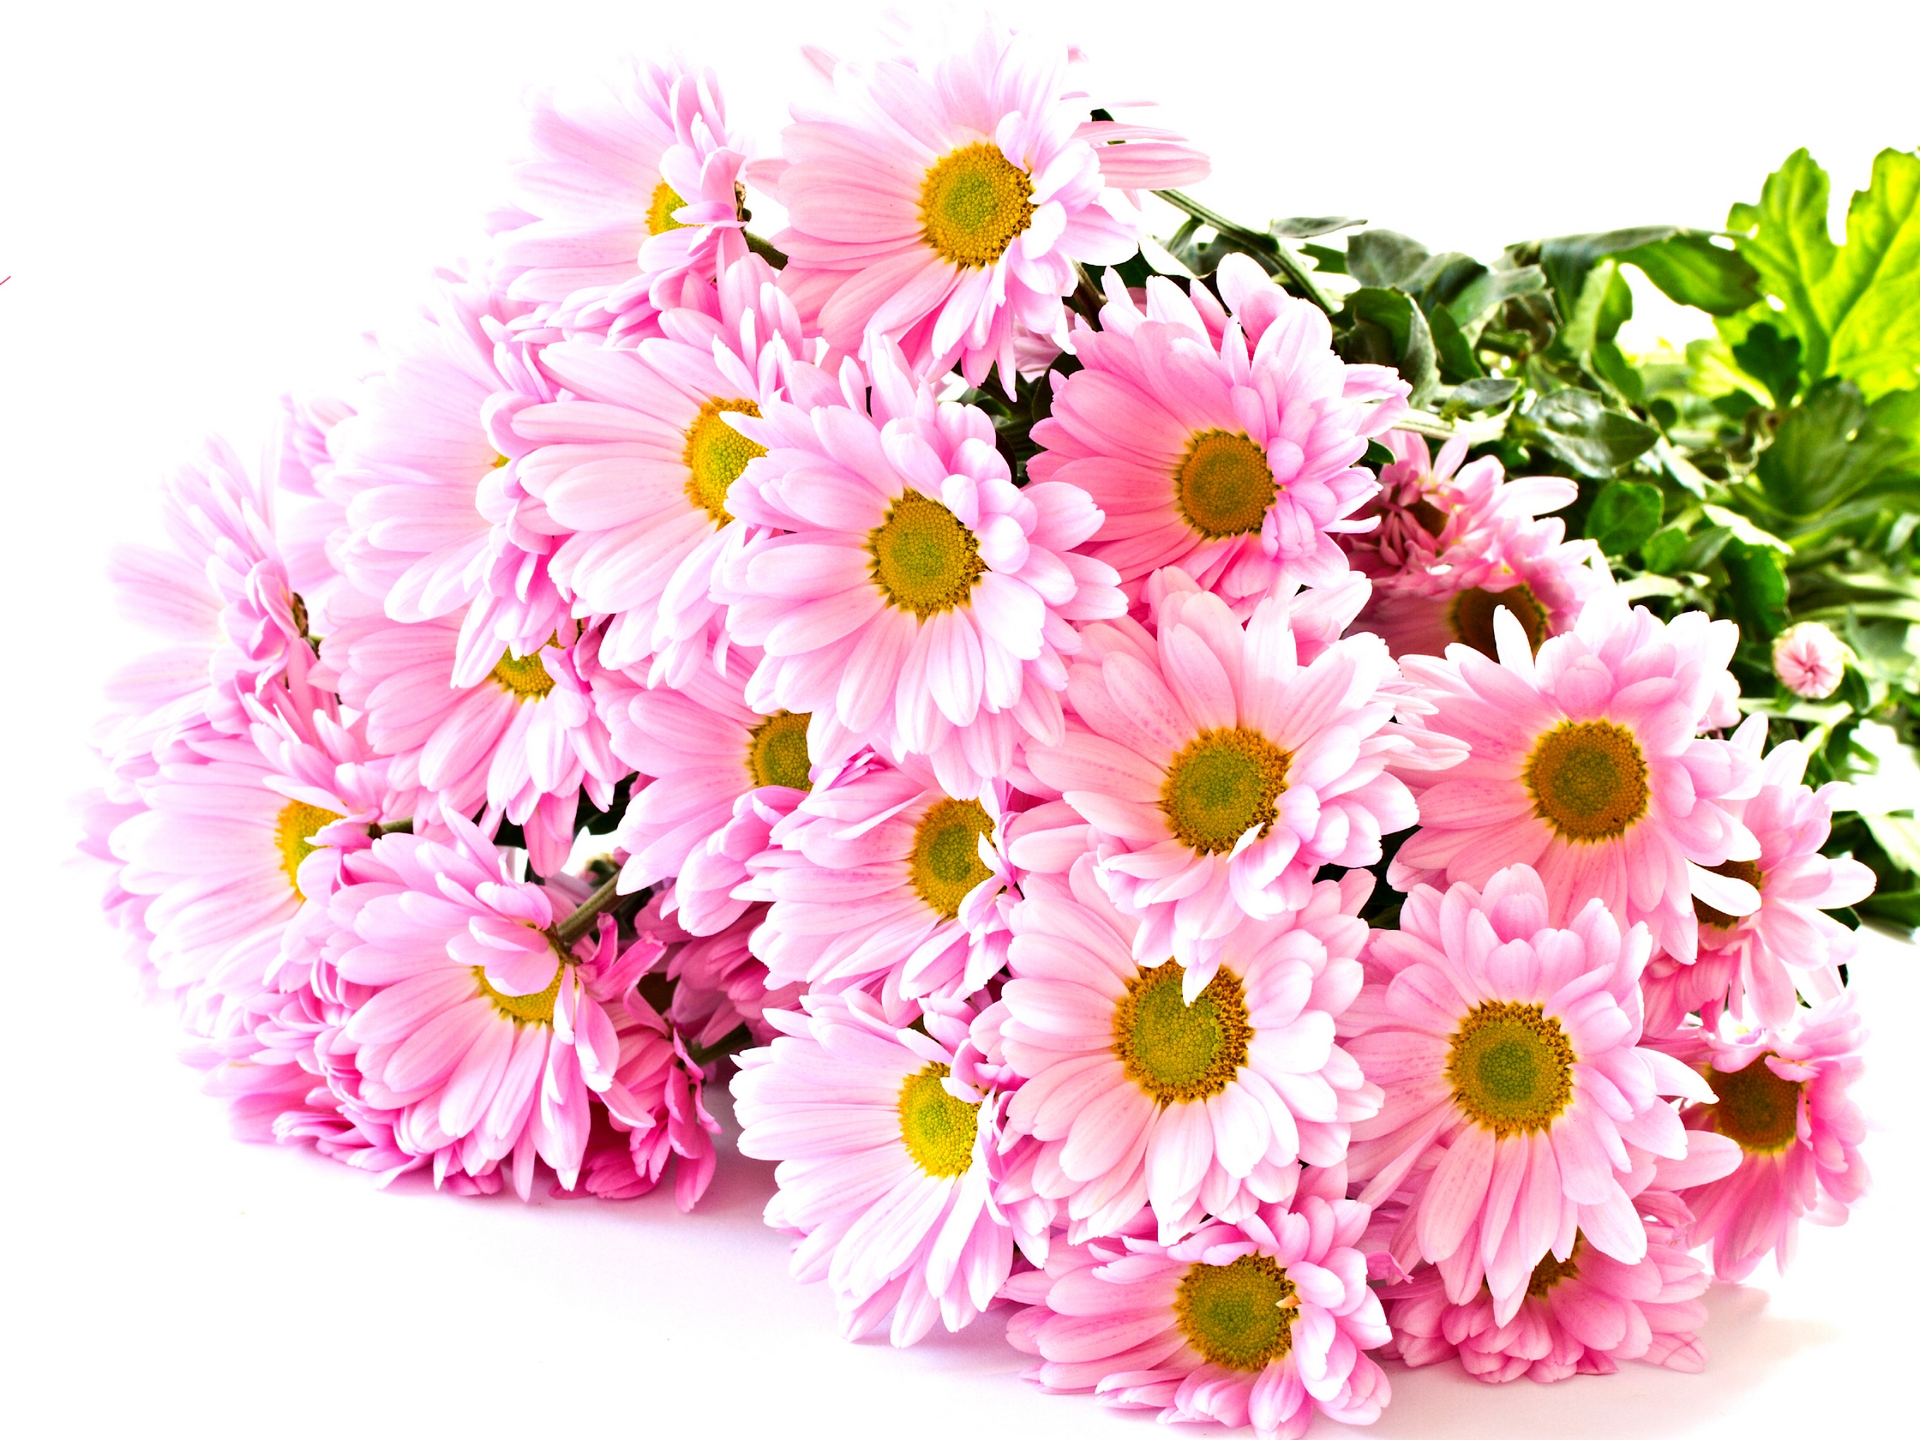 Hình nền hoa đẹp: Hoa là biểu tượng của tình yêu và sự tươi trẻ. Cùng chiêm ngưỡng những hình nền hoa đẹp nhất, màu sắc tươi sáng và hình tượng độc đáo, chúng tôi cung cấp cho bạn những bức ảnh hoa tuyệt đẹp mang đến cho bạn cảm giác thư giãn và hạnh phúc.